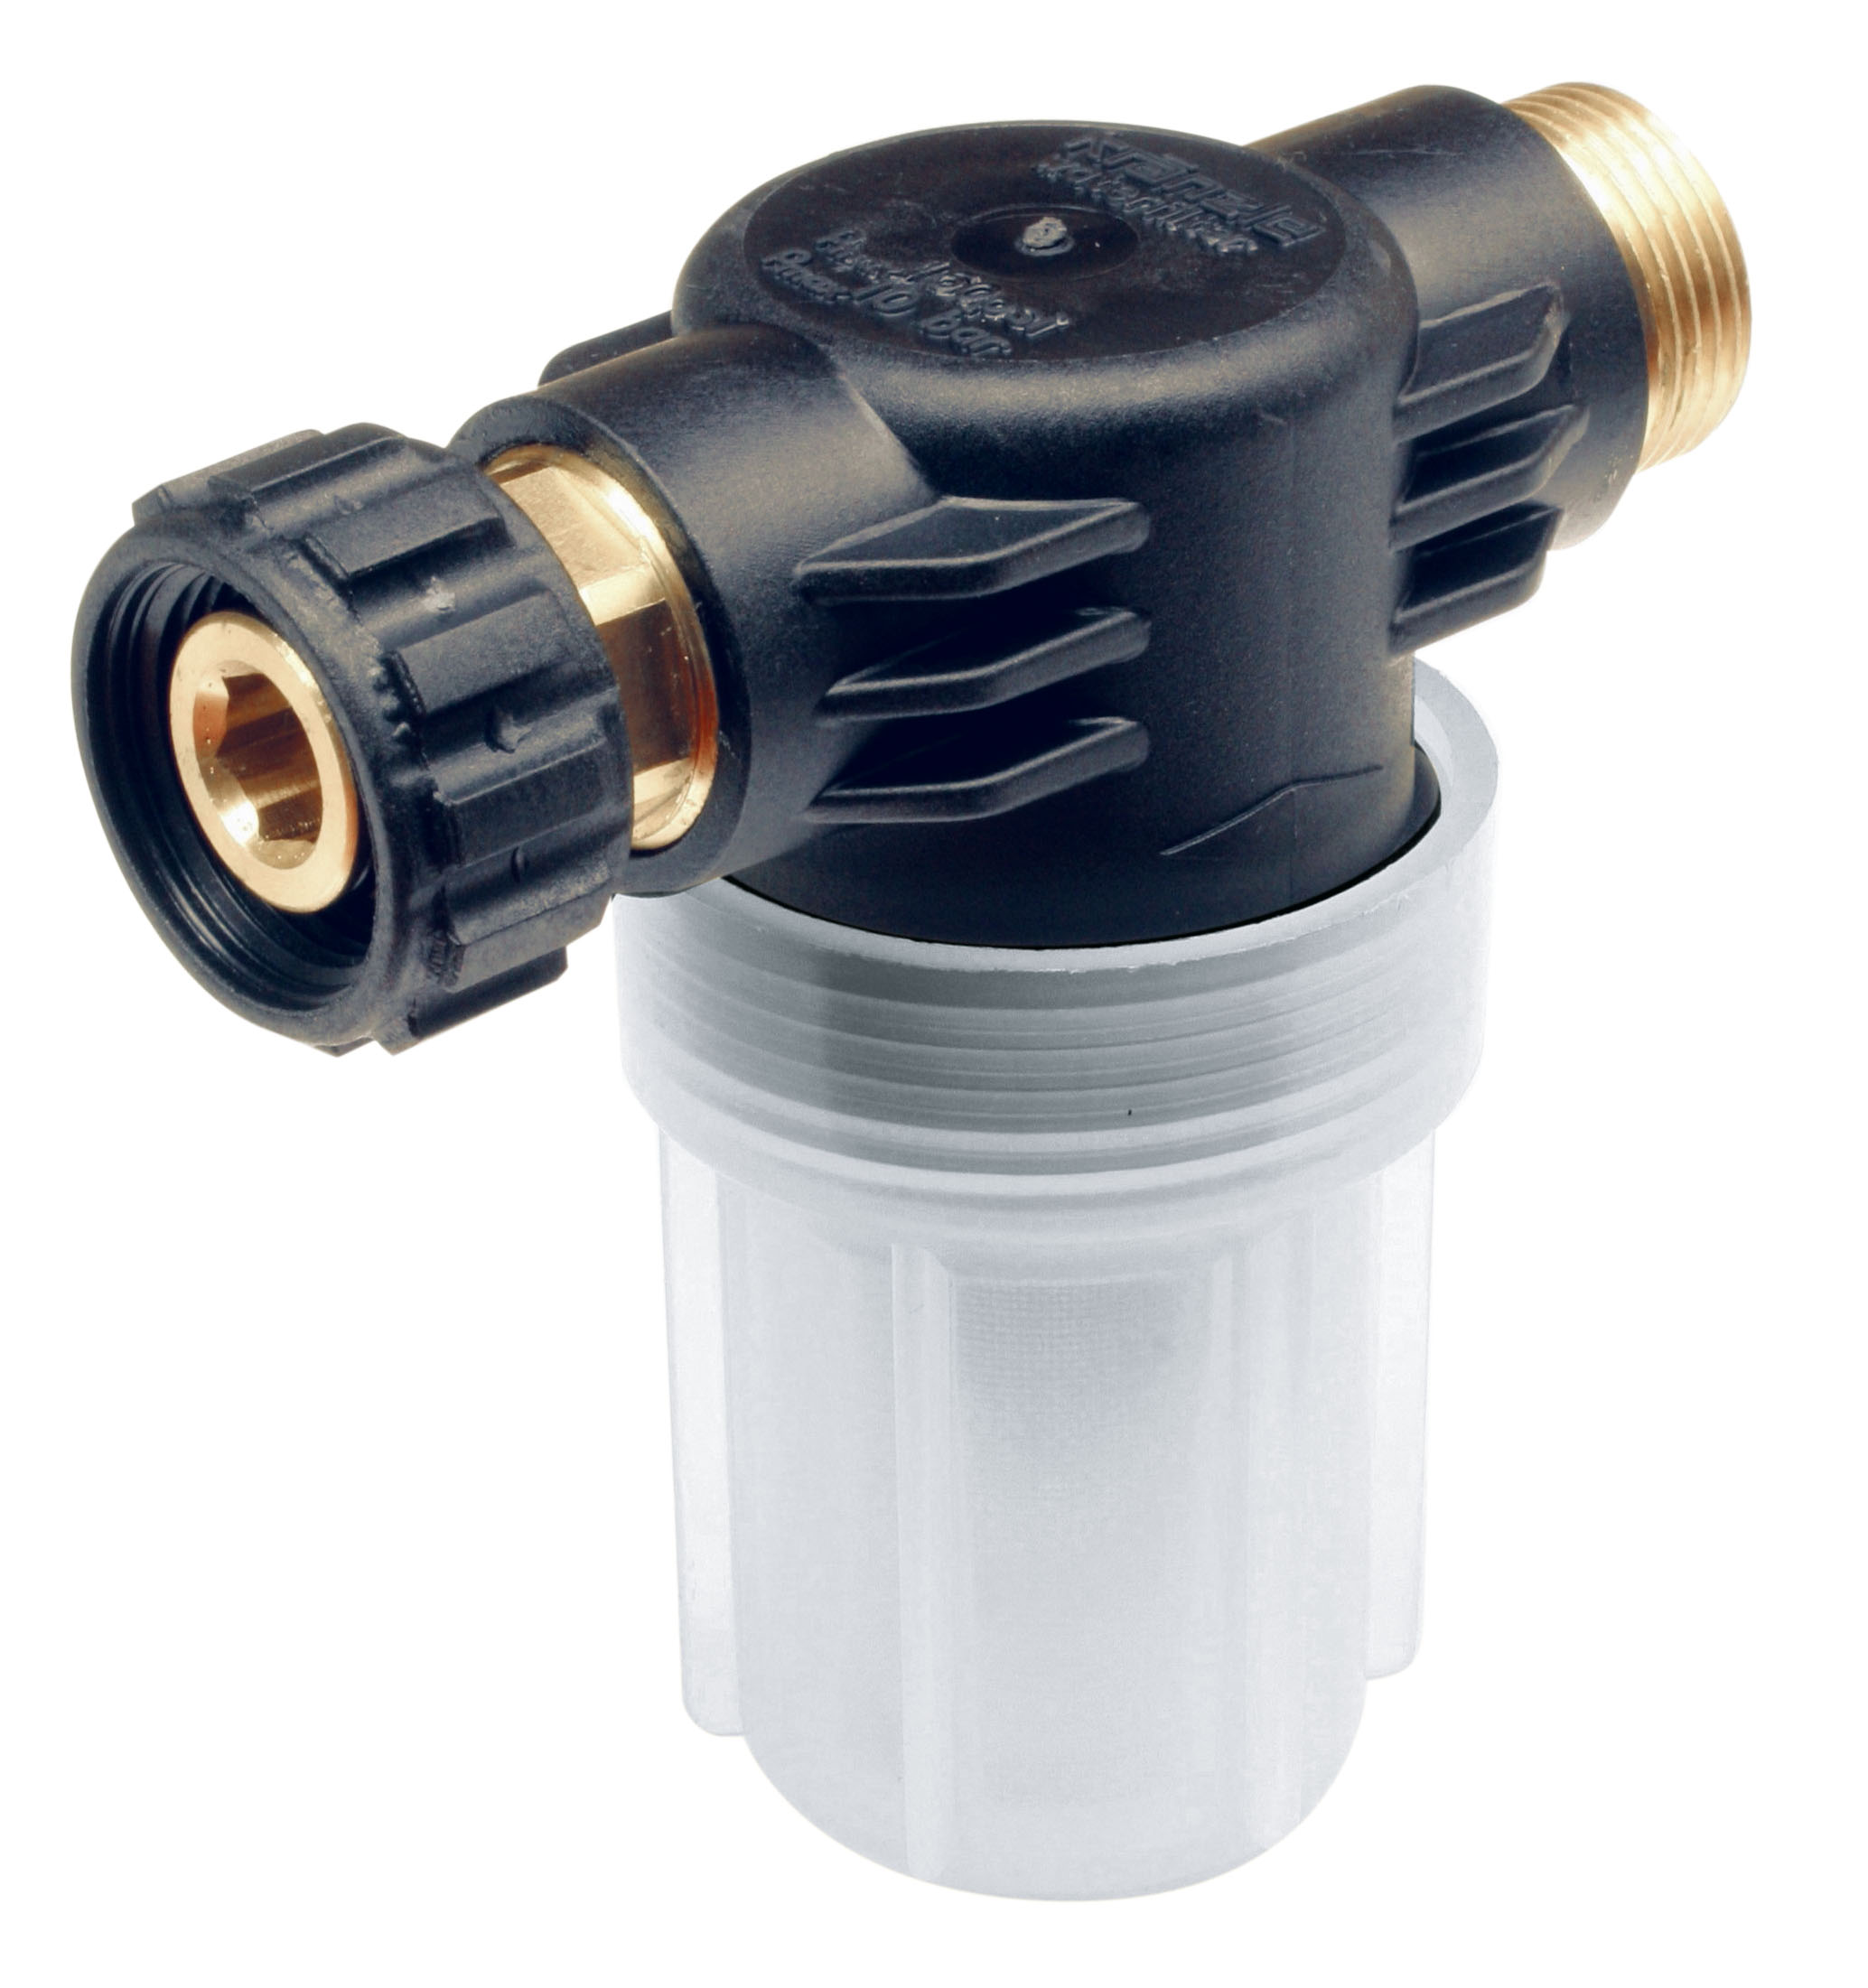 Фильтр для воды высокого давления. Соединитель Kranzle 13.286. Фильтр водяной входной для АВД, 1/2"-1/2" 150 Mic (m-mof0006). Фильтр для АВД 3/4". Фильтр для воды 2.997-210.0.